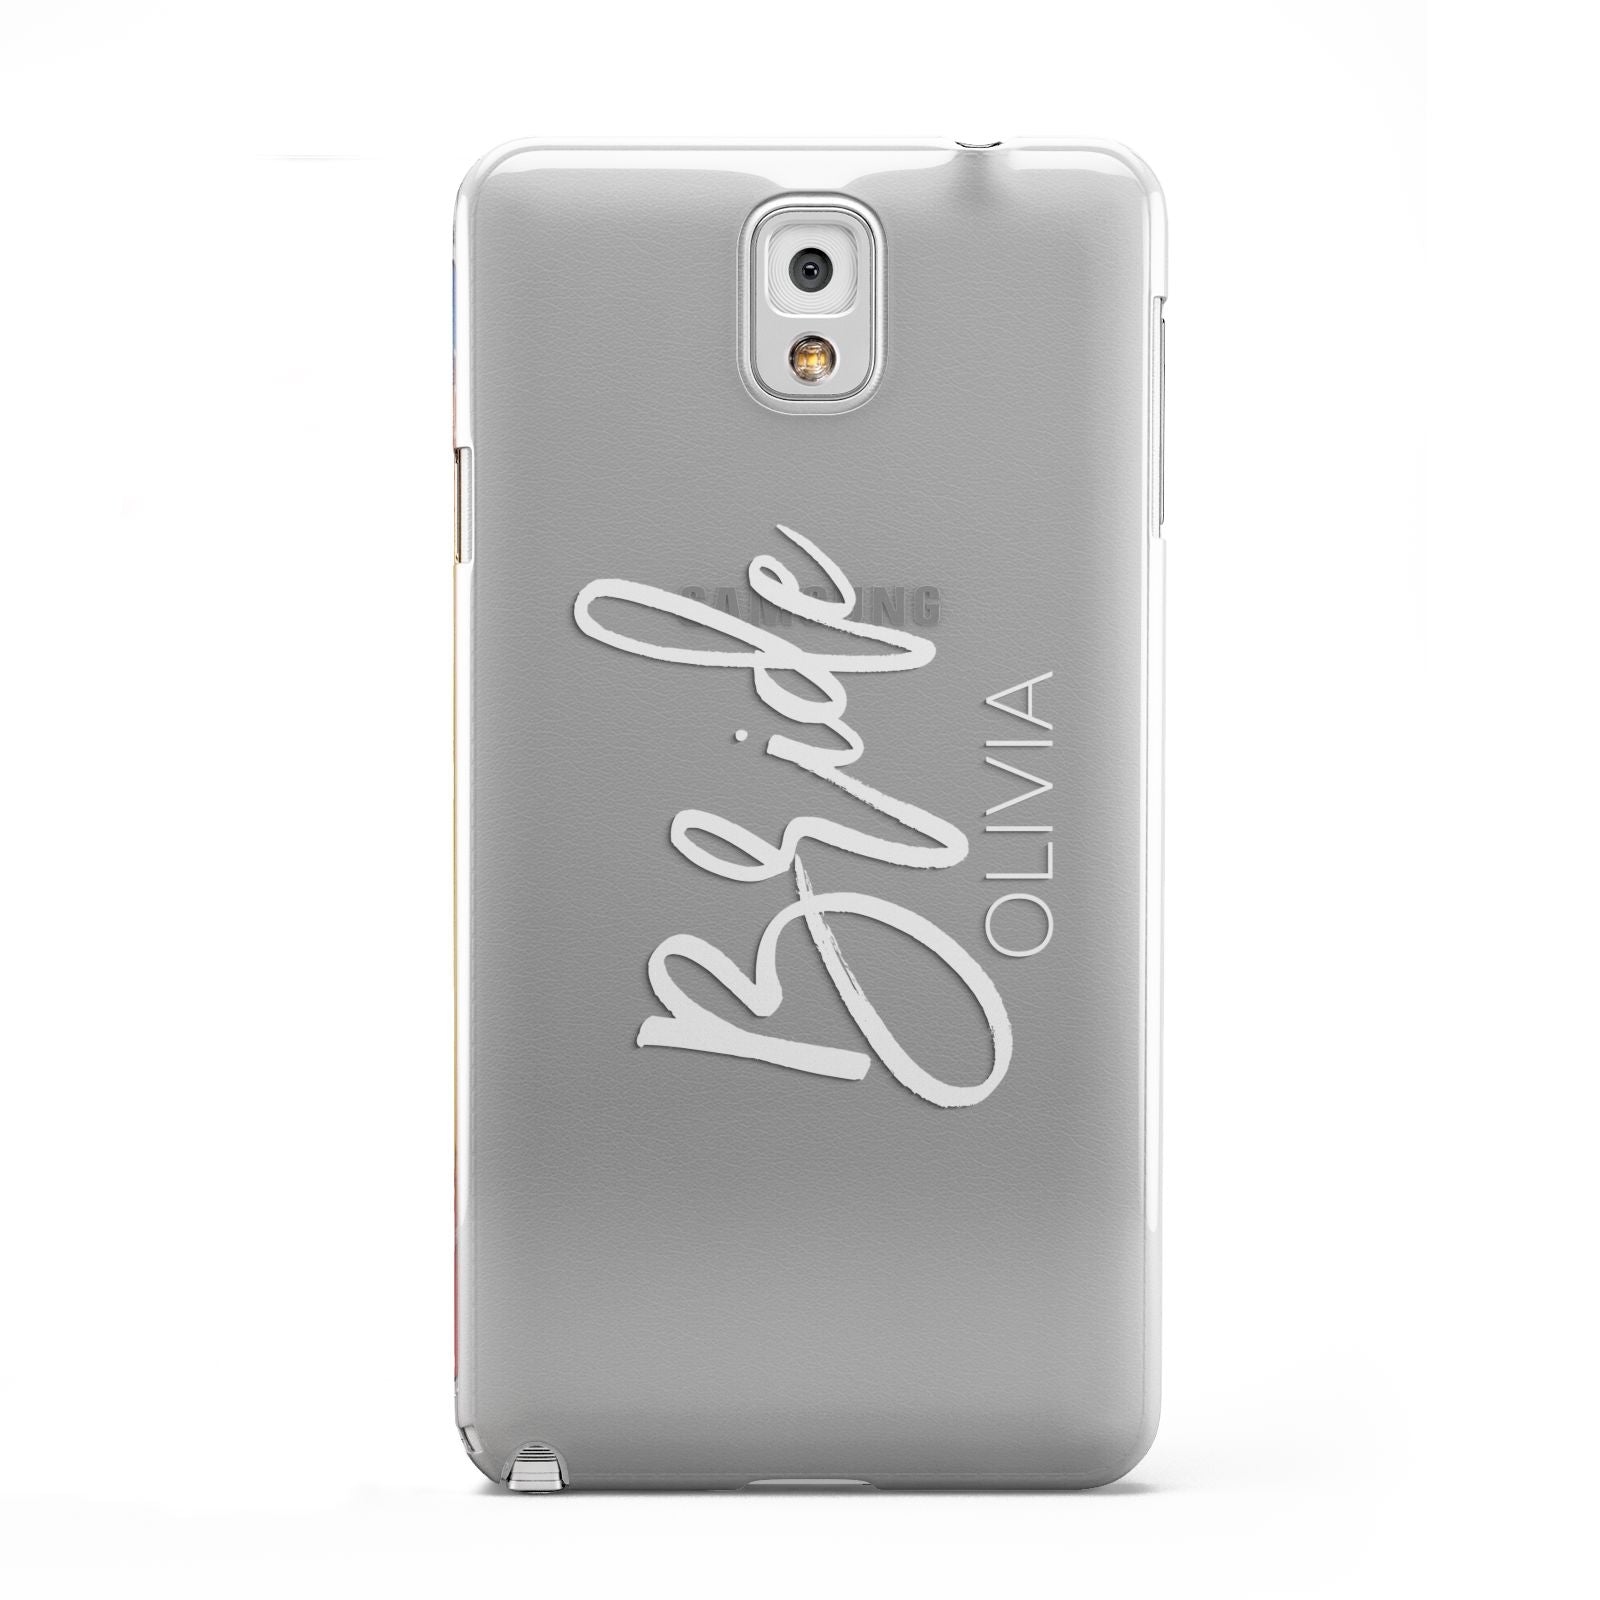 Personalised Bride Samsung Galaxy Note 3 Case